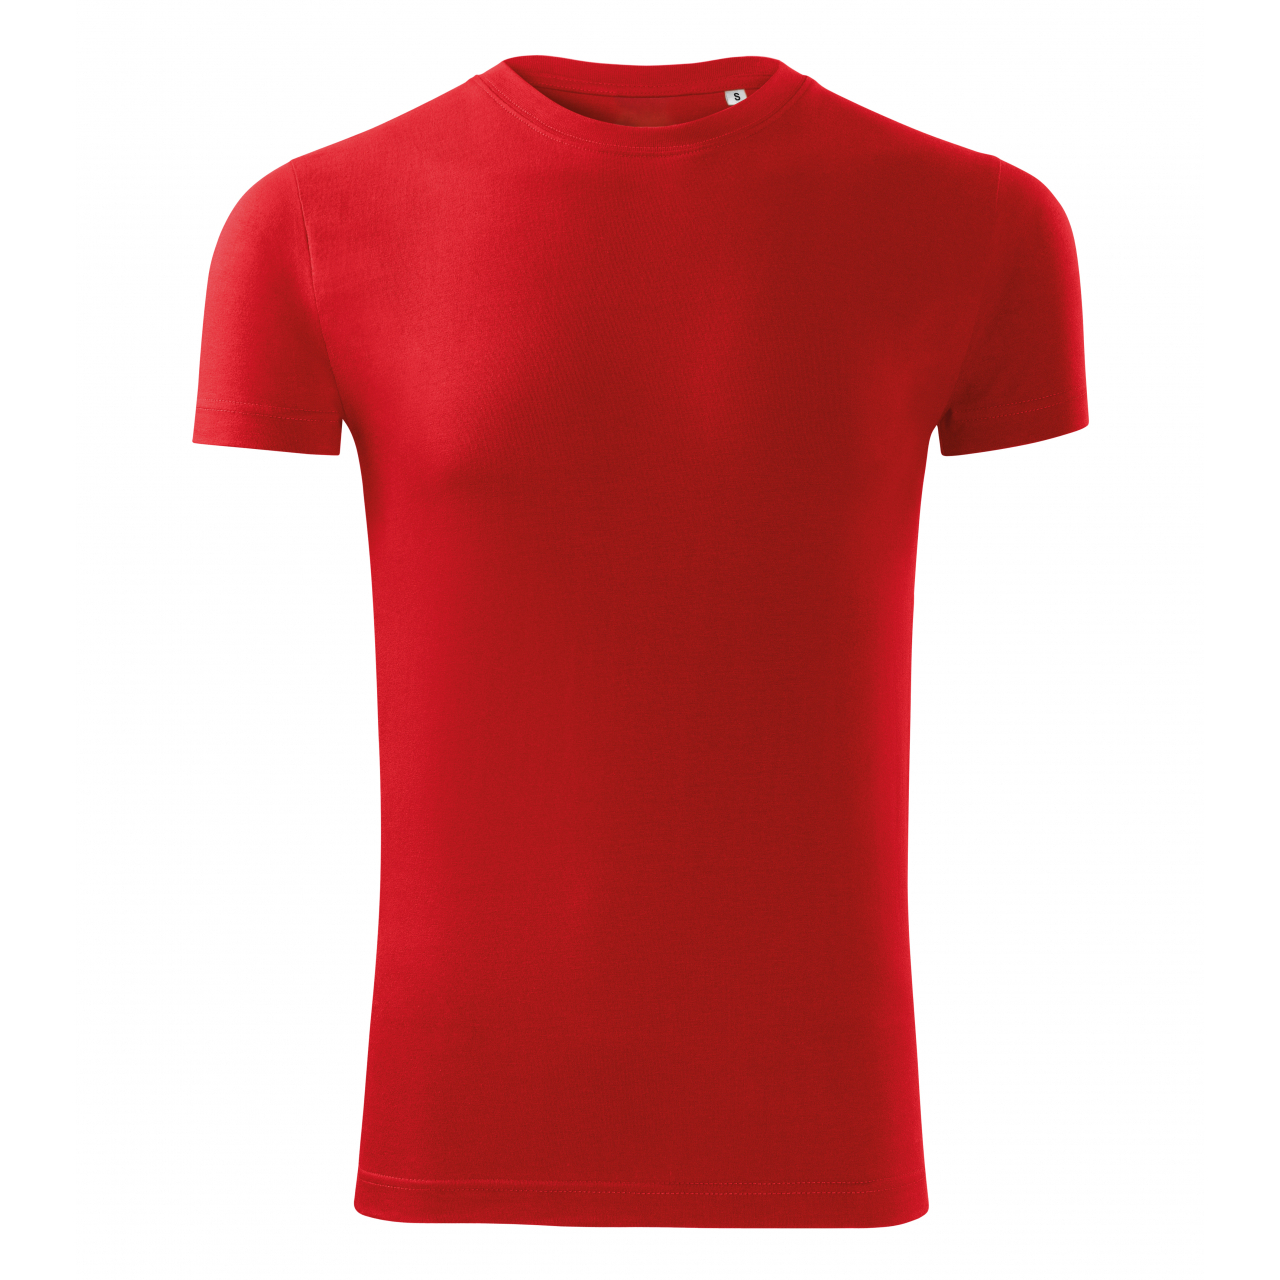 Tričko pánské Malfini Viper Free - červené, XL